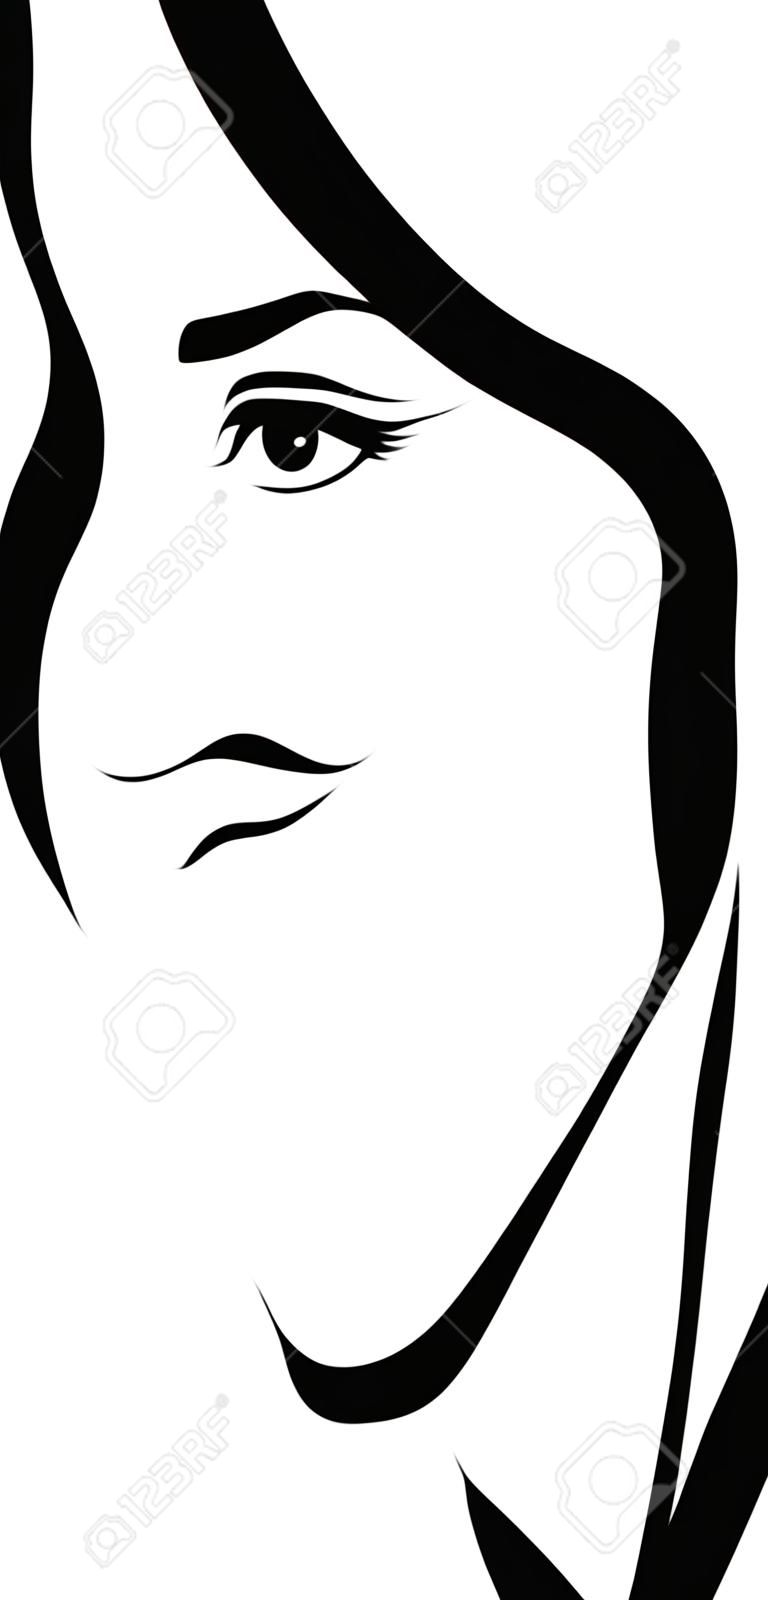 女性顔プロファイル線画